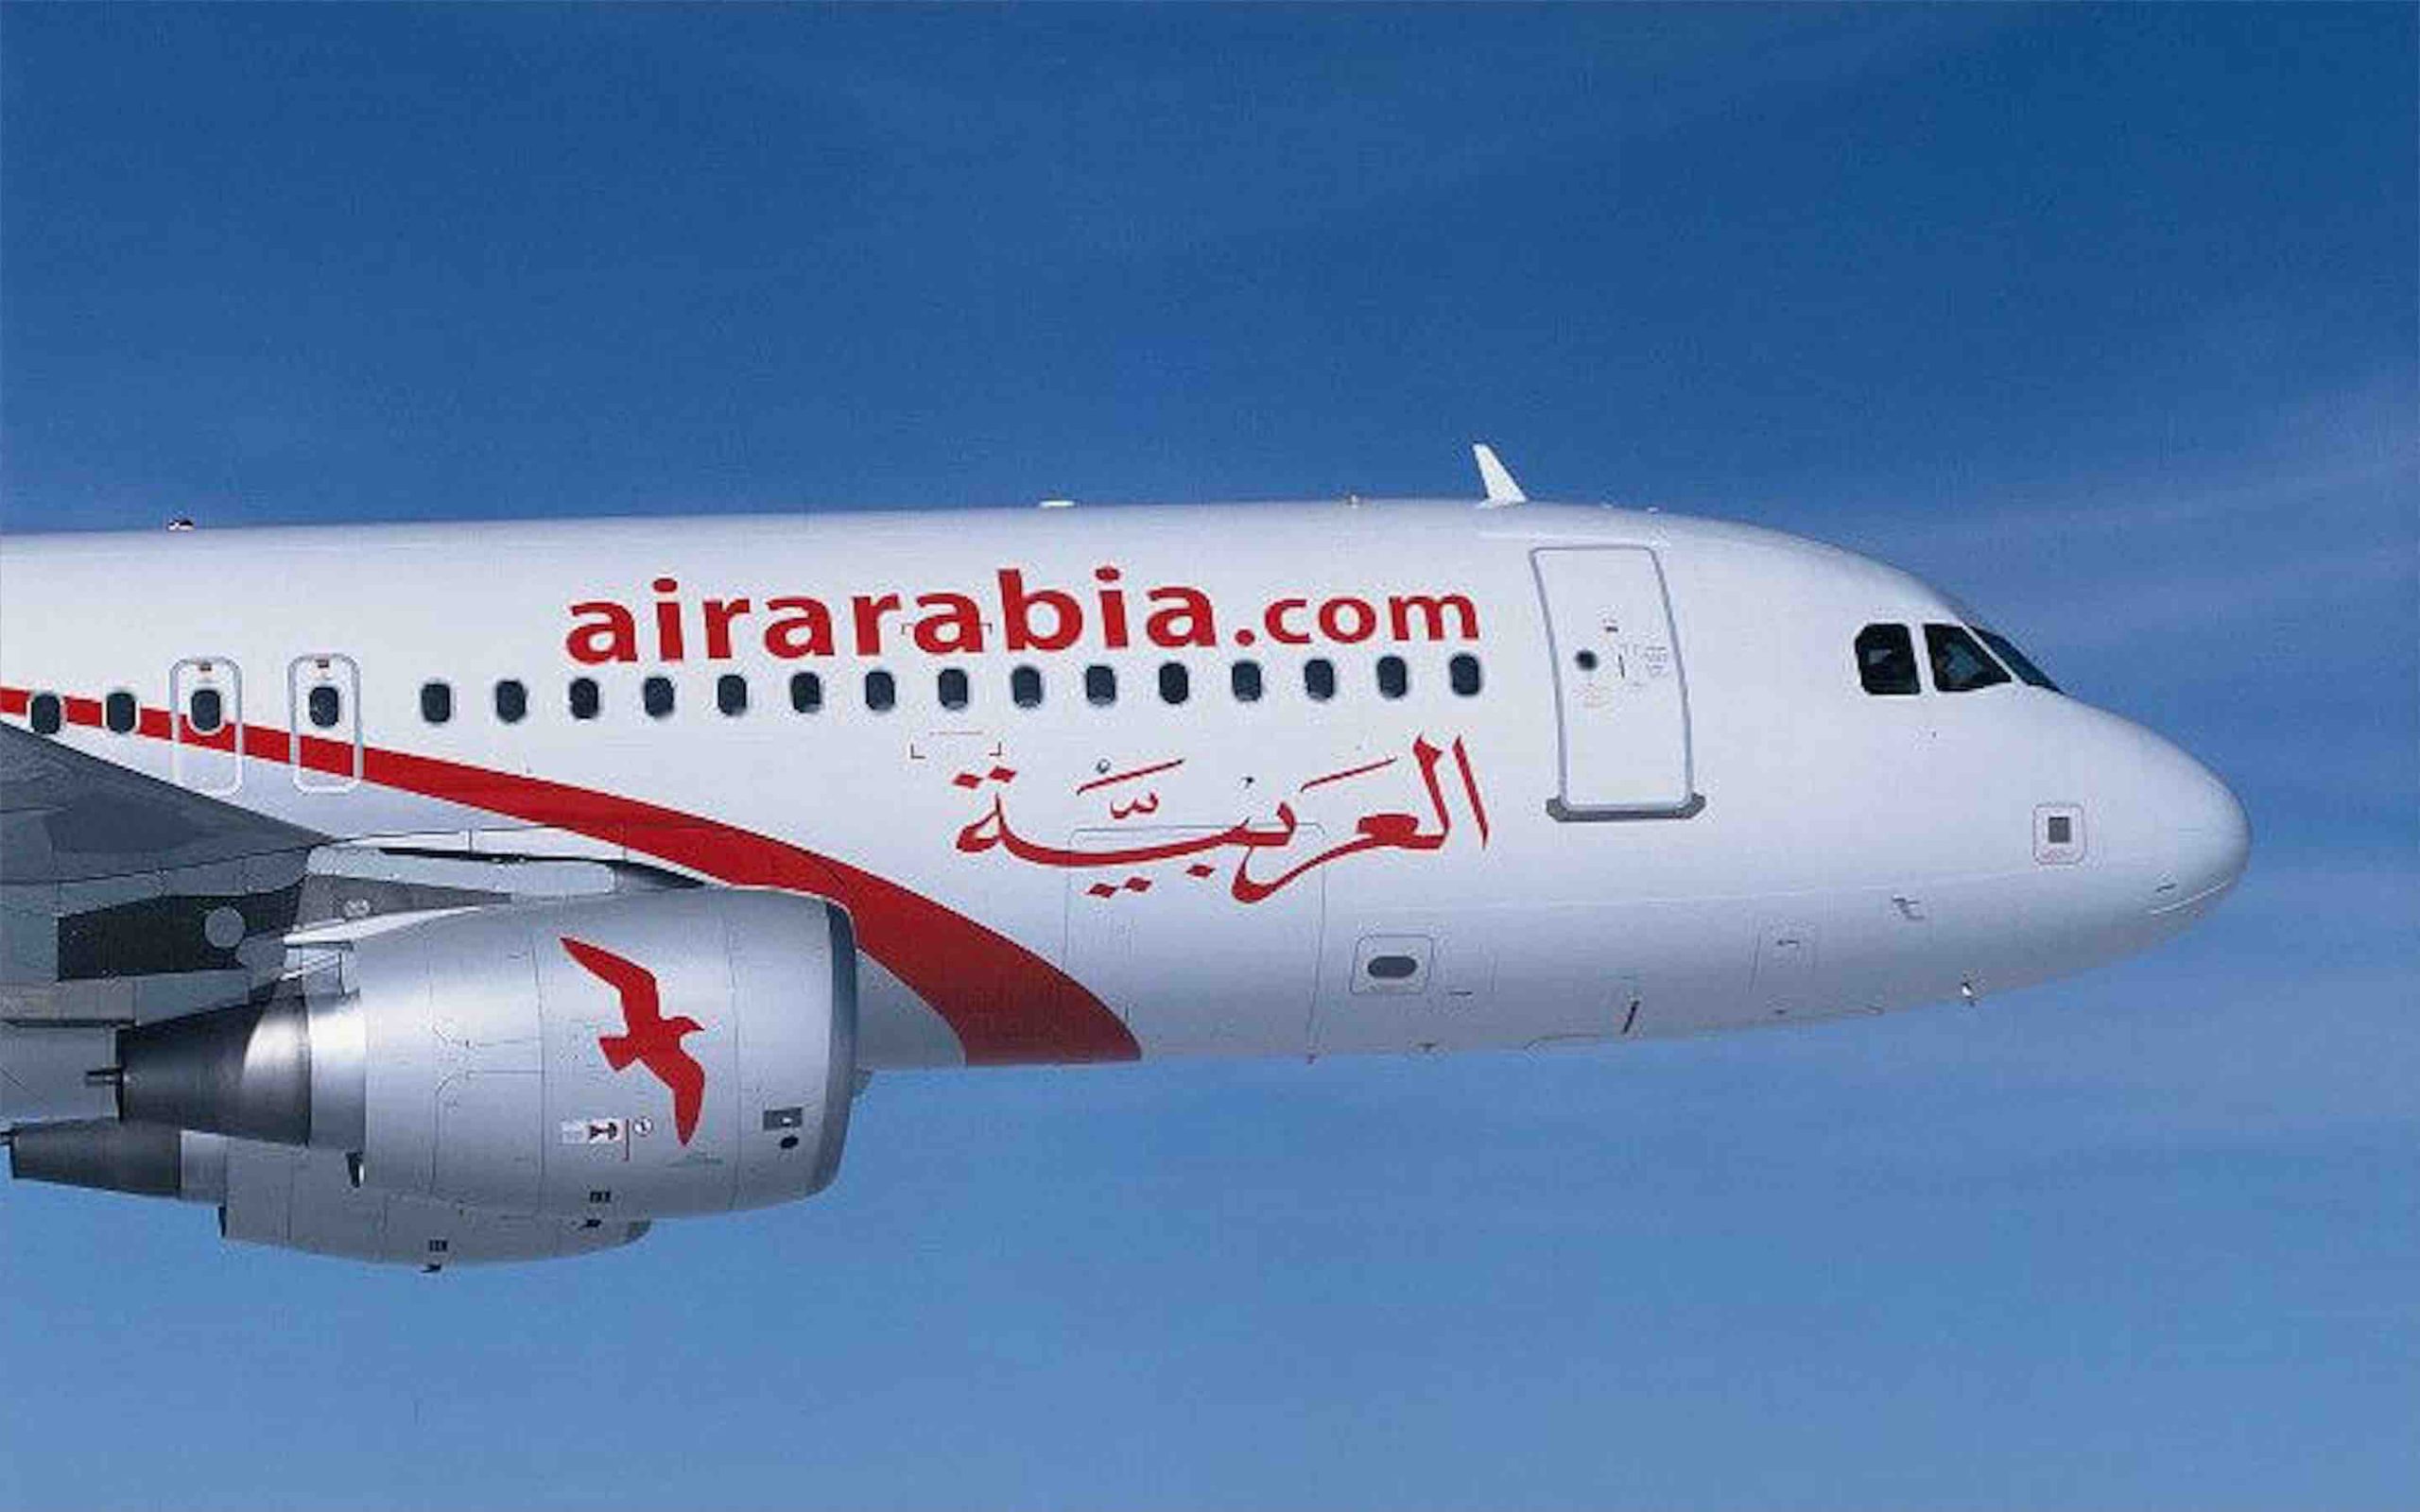 Air arabia на русском. Air Arabia a320. Аэробус а320 Air Arabia. G9 956 Air Arabia. G9956 Air Arabia.